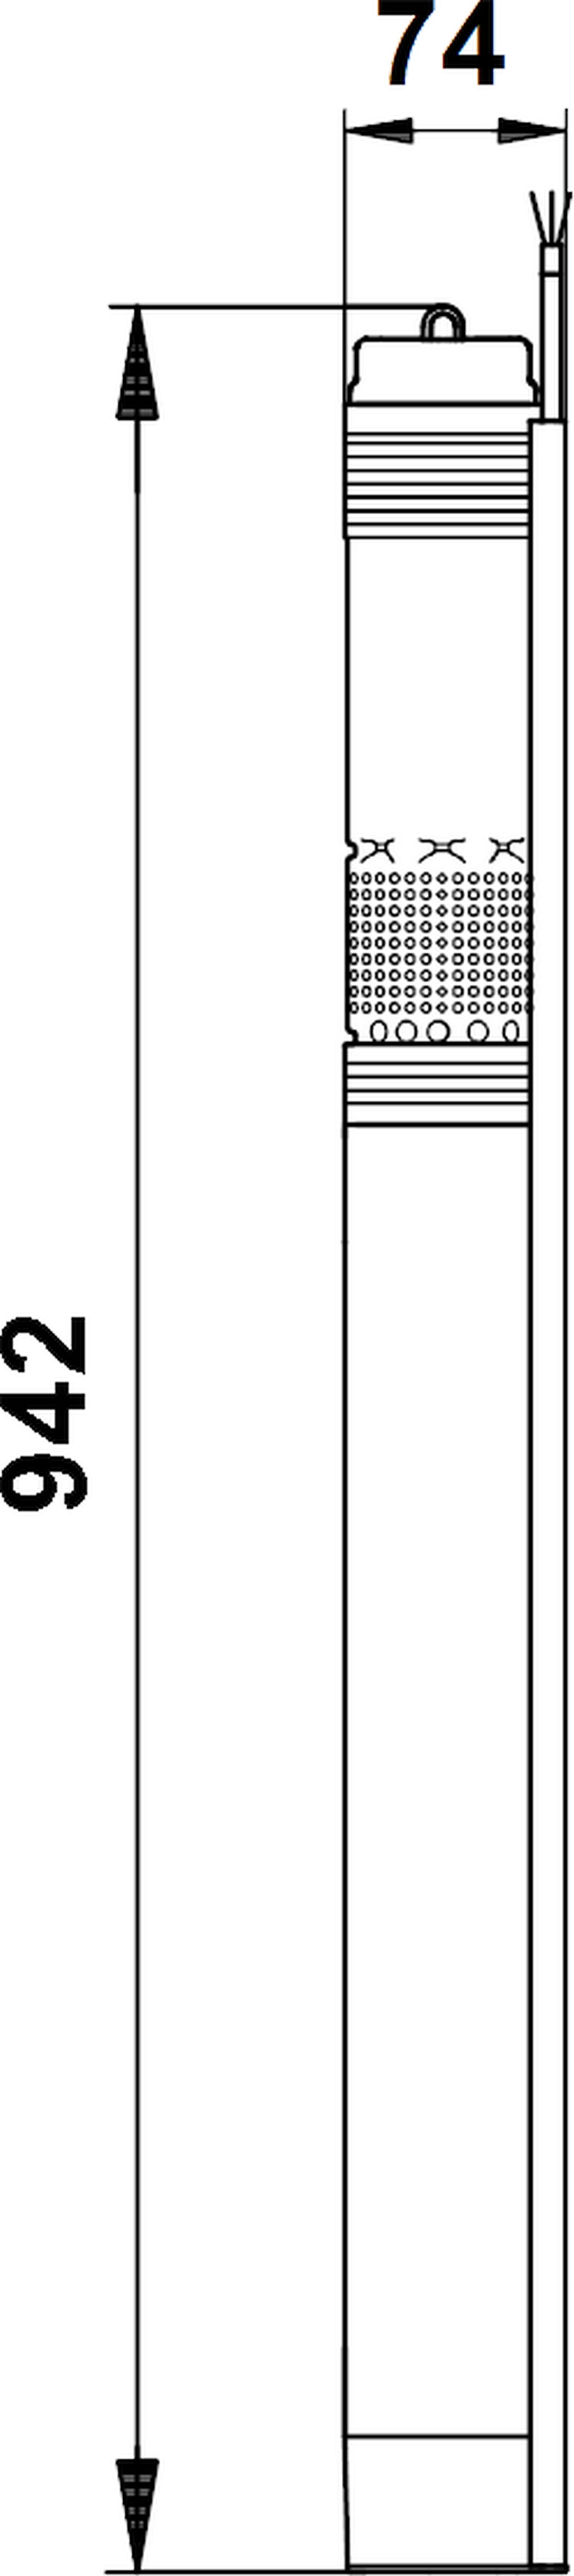 Grundfos SQ 1-125 (96510194) Габаритные размеры